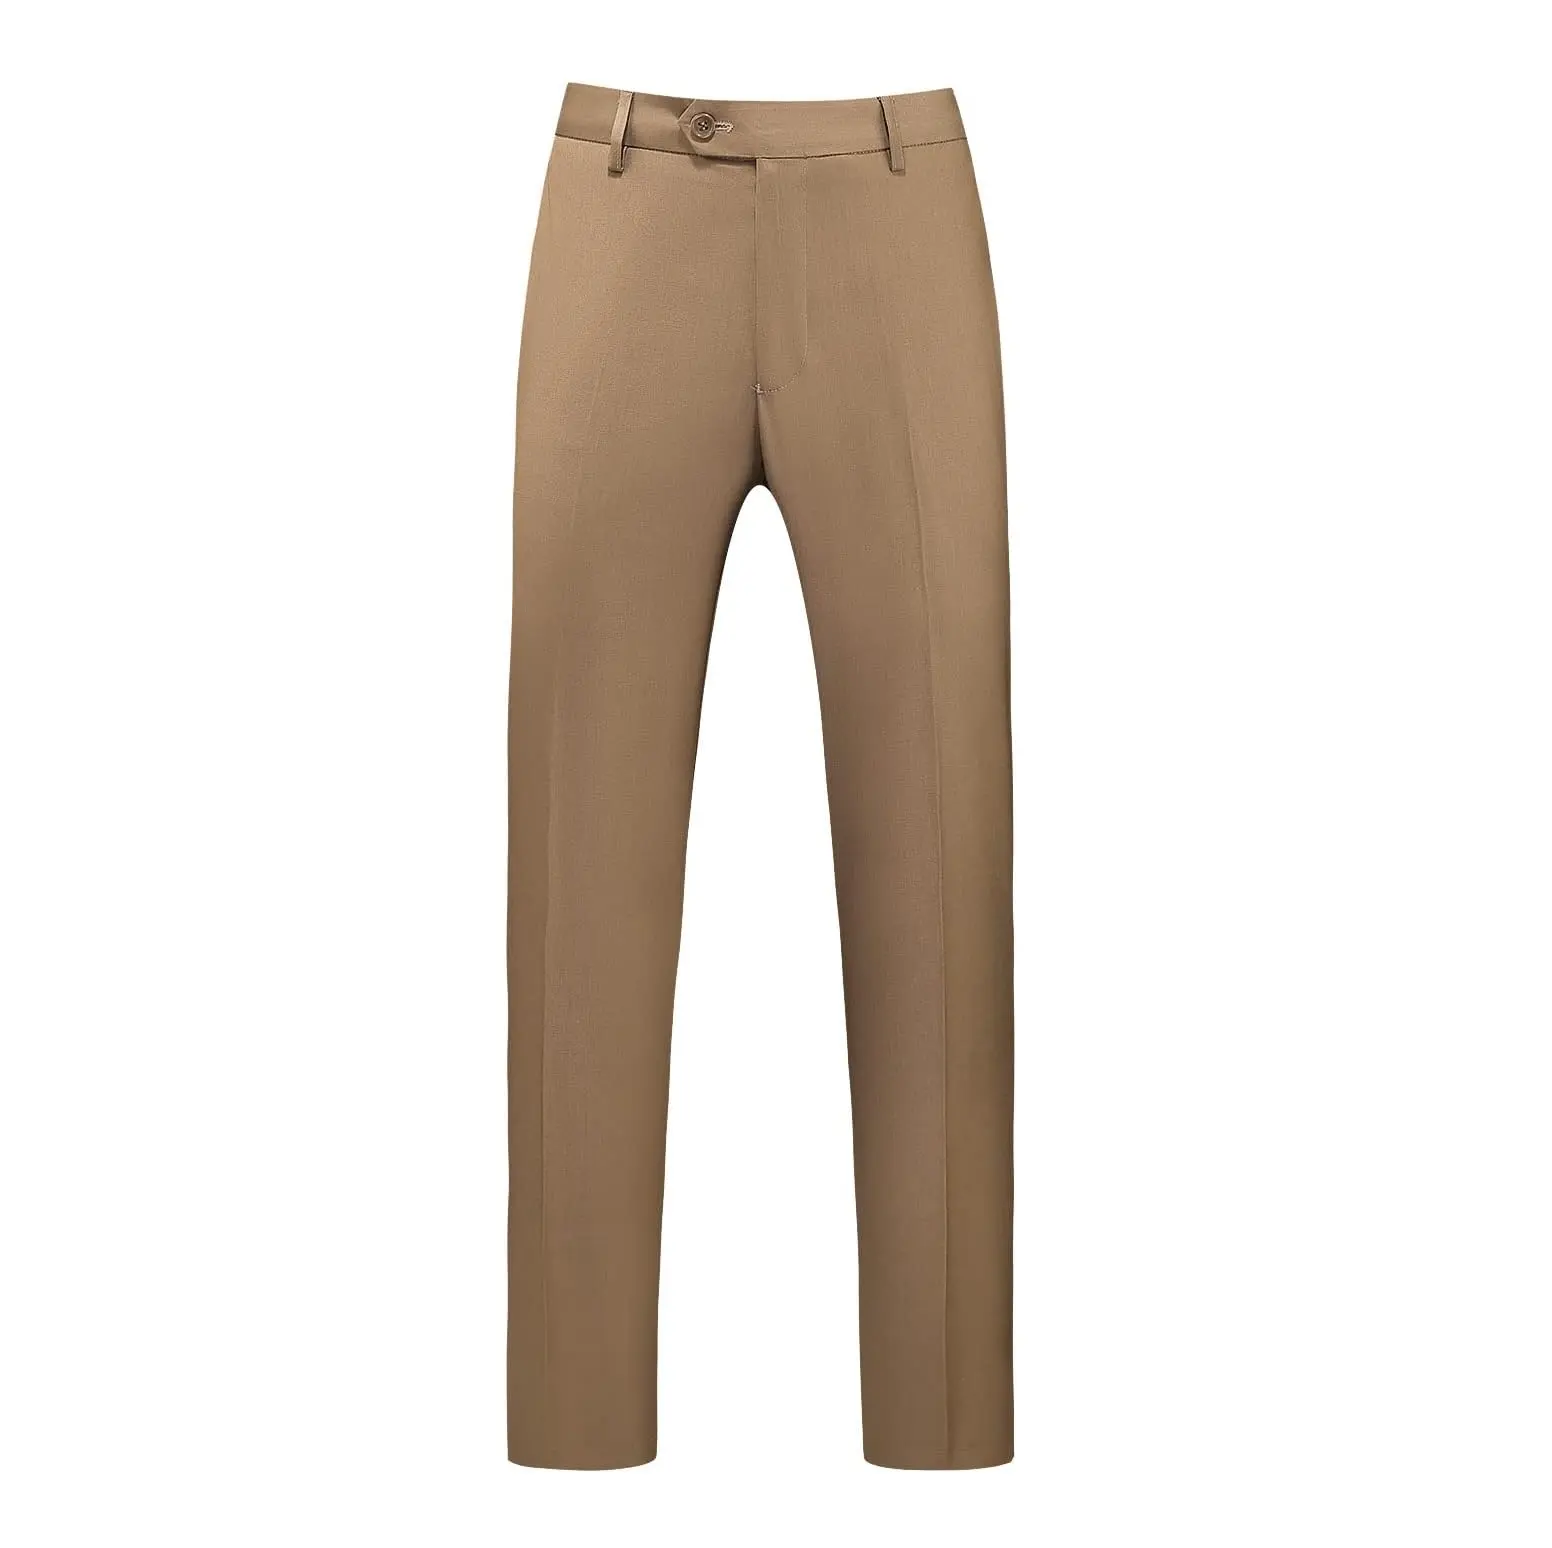 Celana panjang Formal pria, pakaian bisnis warna Khaki kualitas Superior Tersedia dengan harga terbaik